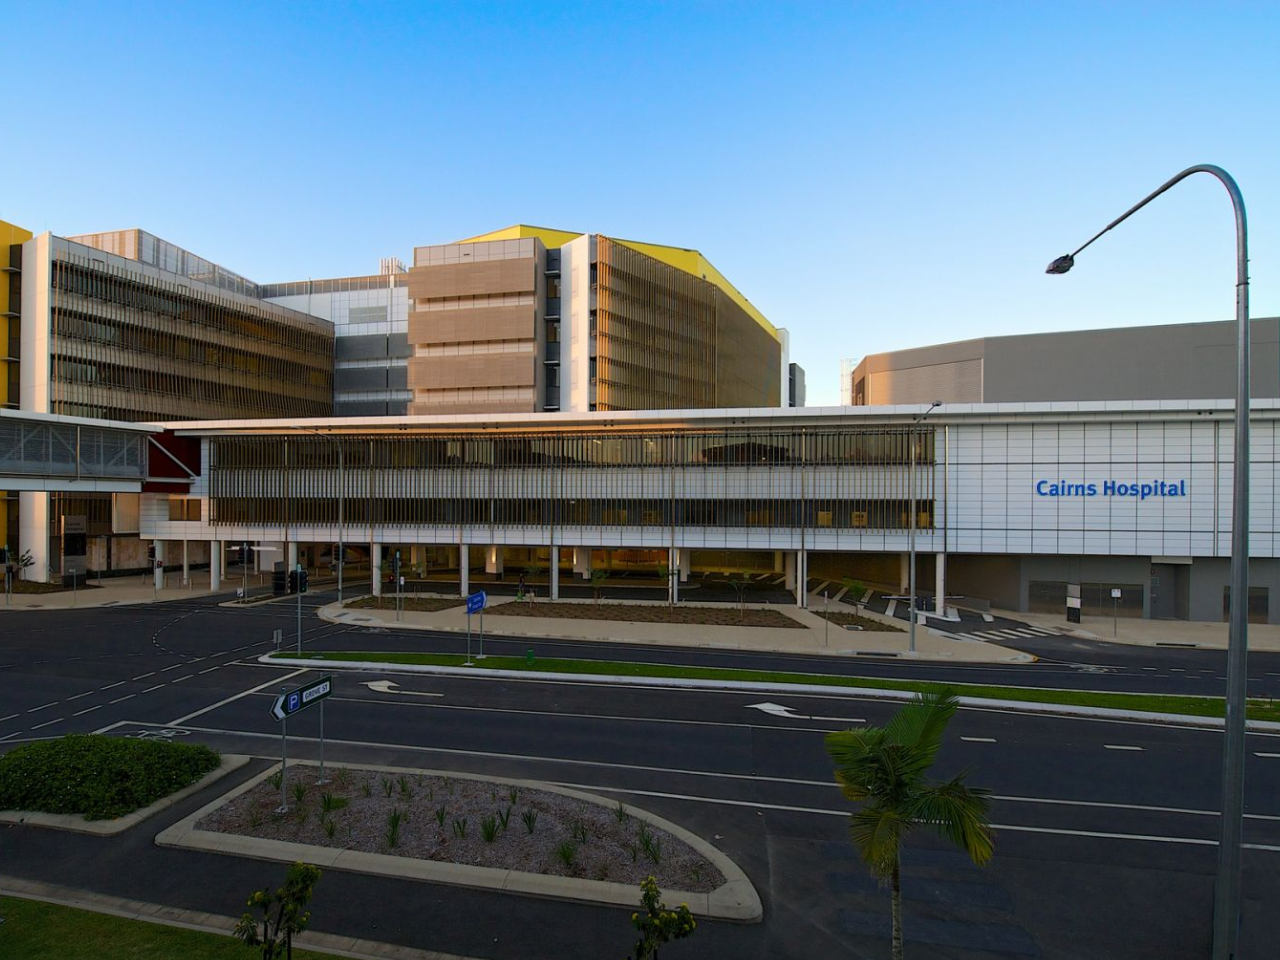 Atención de emergencia, redefinida: Ecografía de alta gama en el Hospital de Cairns, Australia